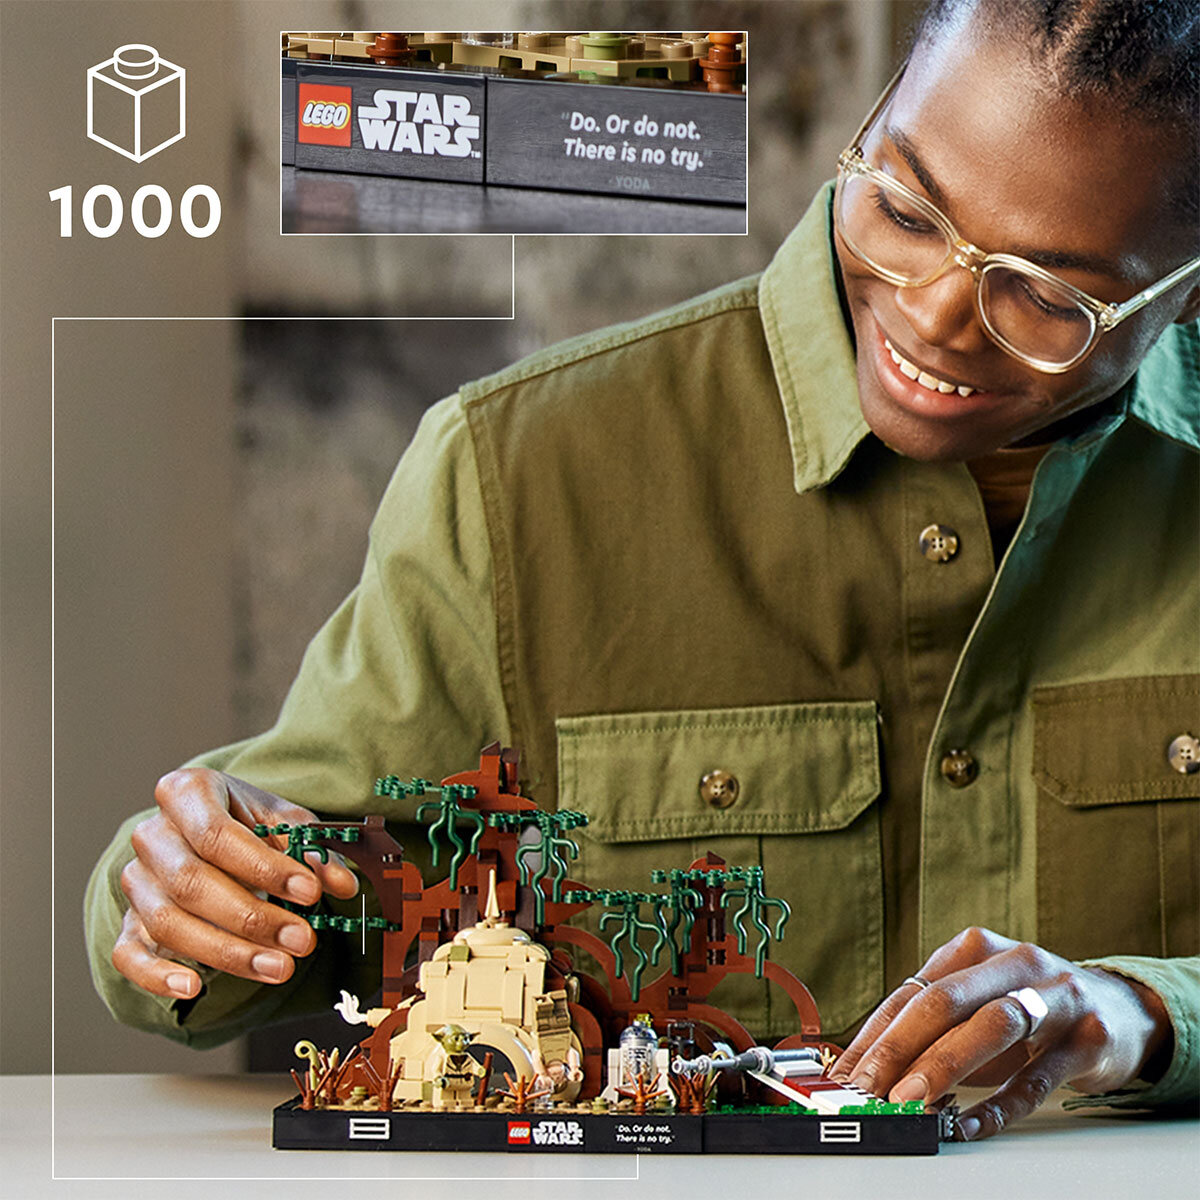 Buy Lego Star Wars Dagobah Jedi Training Lifestyle Image at Costco.co.uk